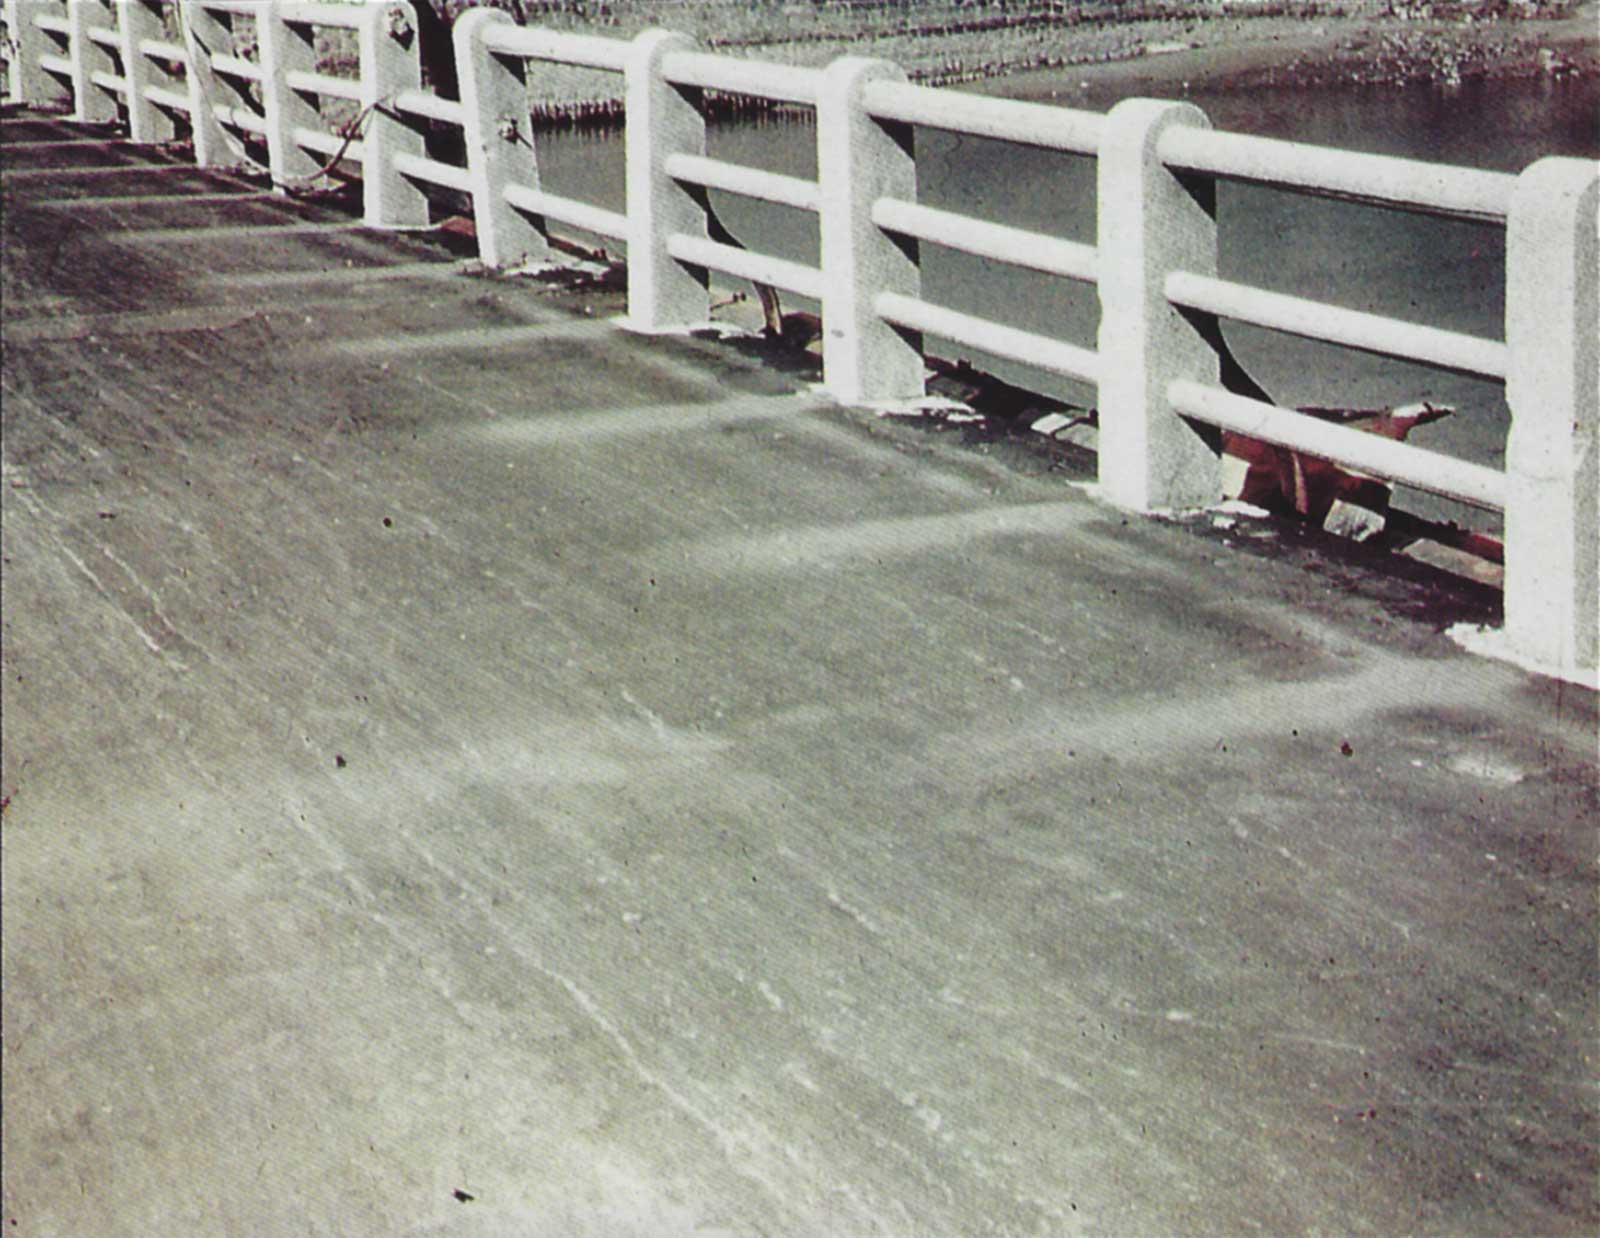 Umbra parapetului este imprimata pe suprafata podului, la 880 de metri sud-sud-vest de hipocentru.